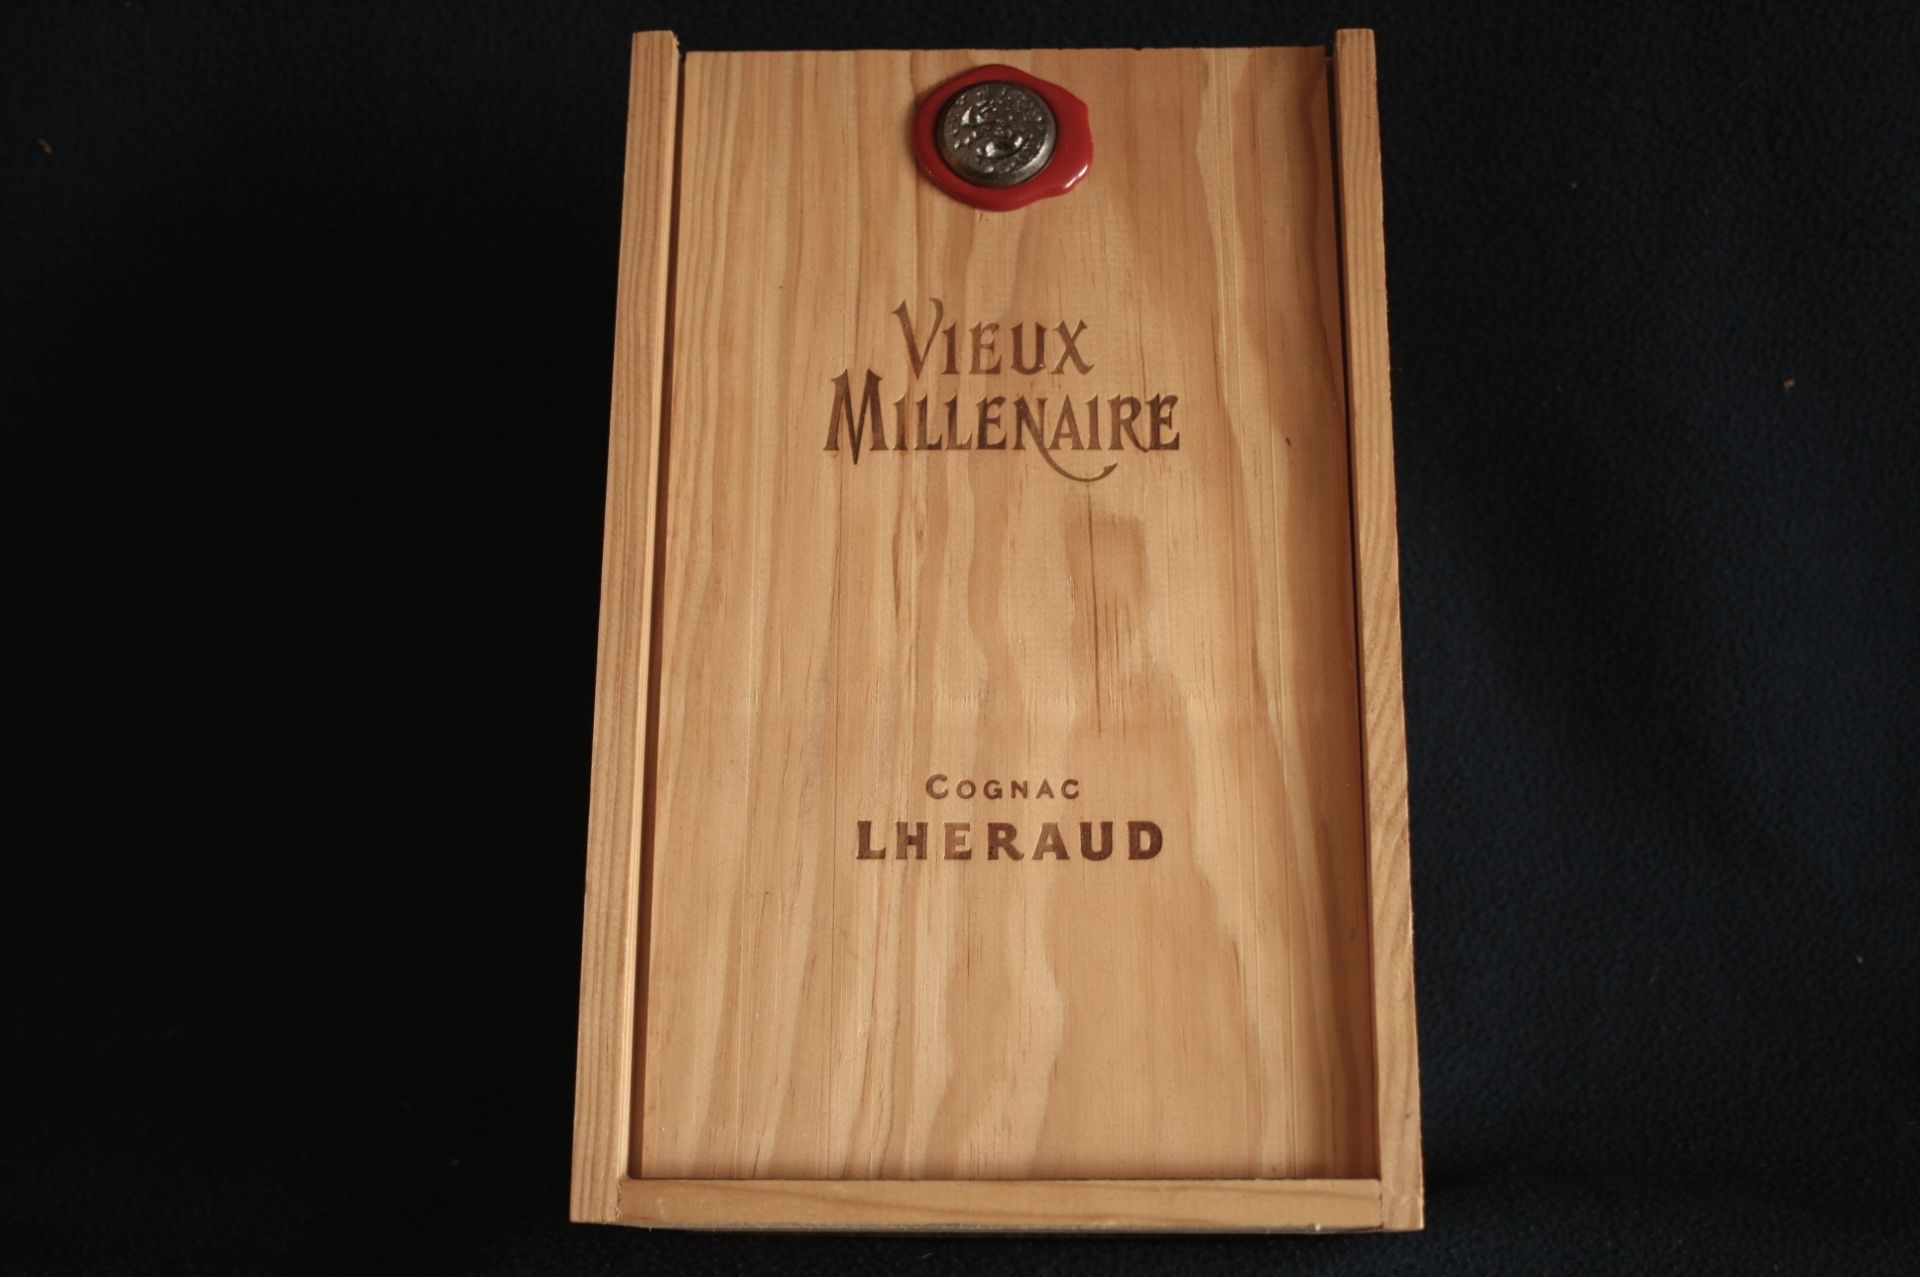 Cognac LHERAUD "Vieux Millénaire" - 25 ans d'âge, Petite champagne, 43% vol. - [...]